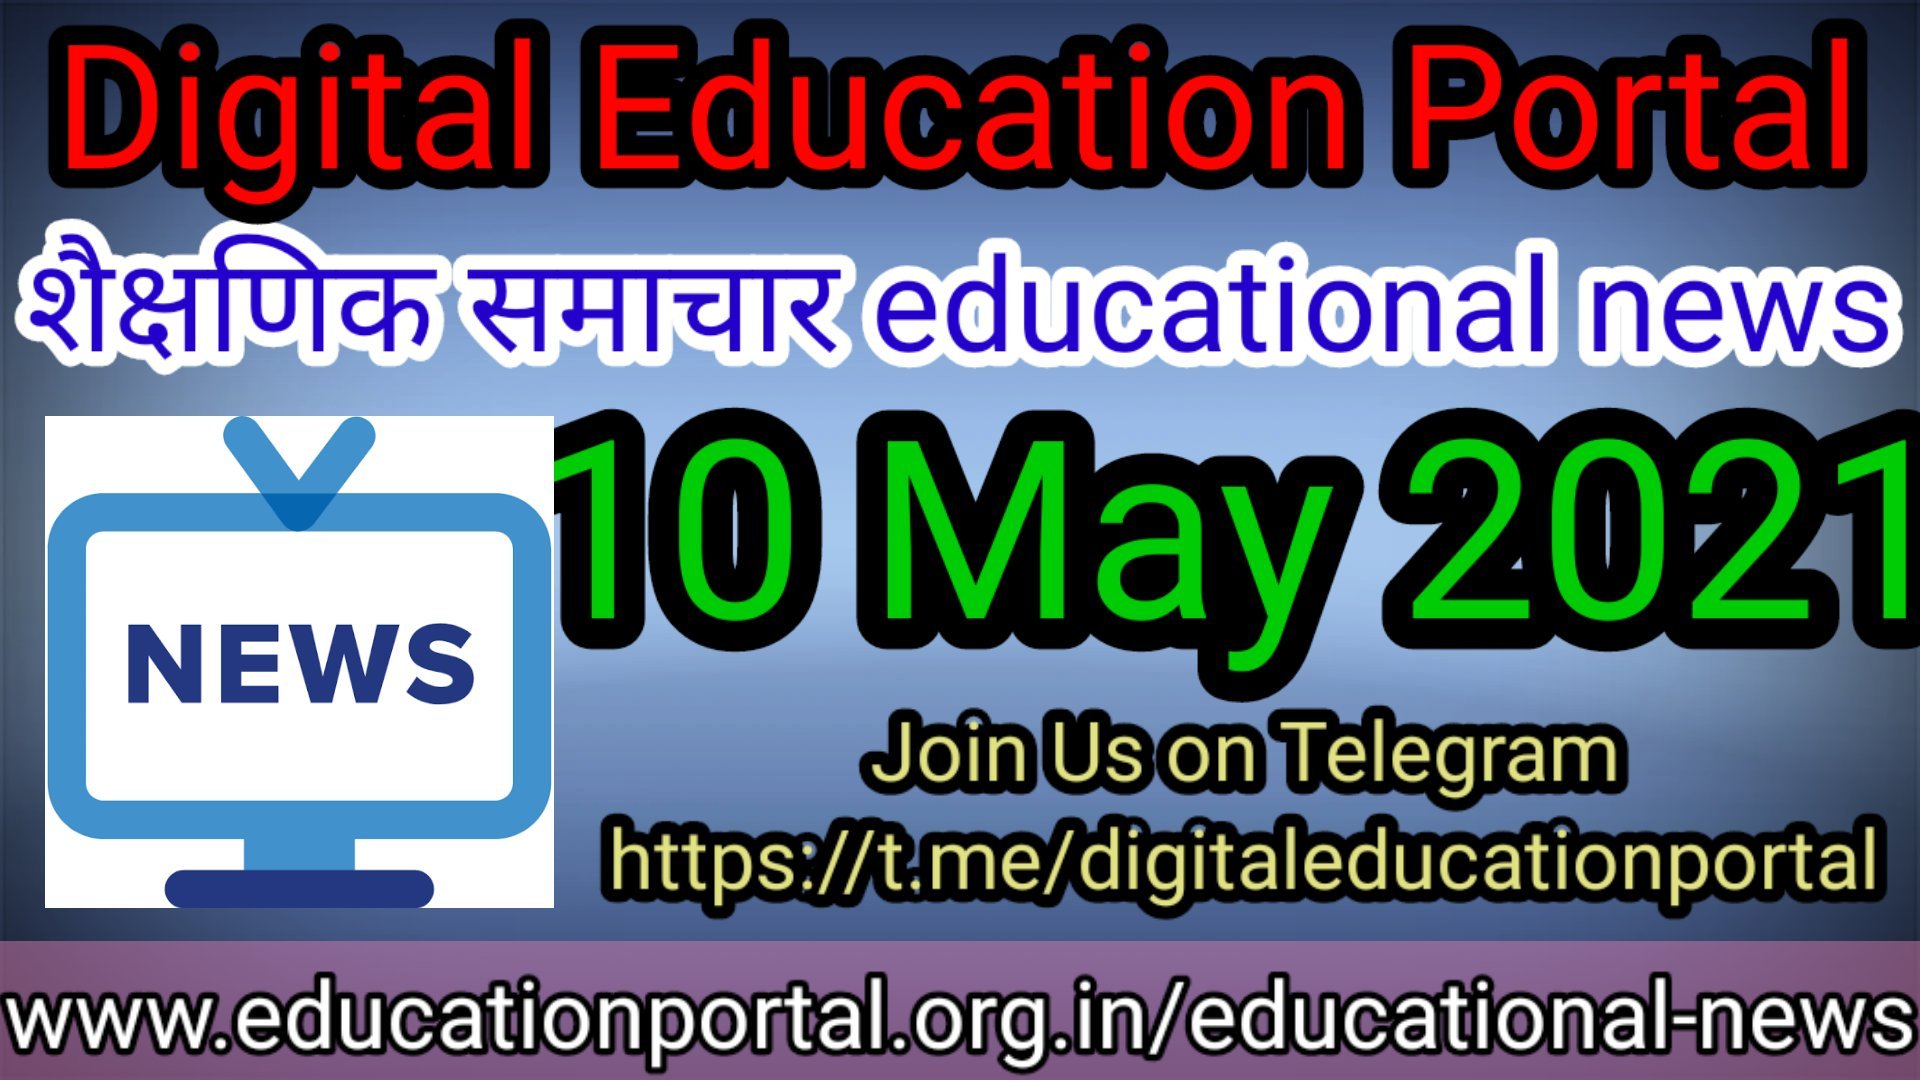 Today's educational news आज की ताजा खबरें शिक्षक समाचार 8 मई 2021 एजुकेशन पोर्टल